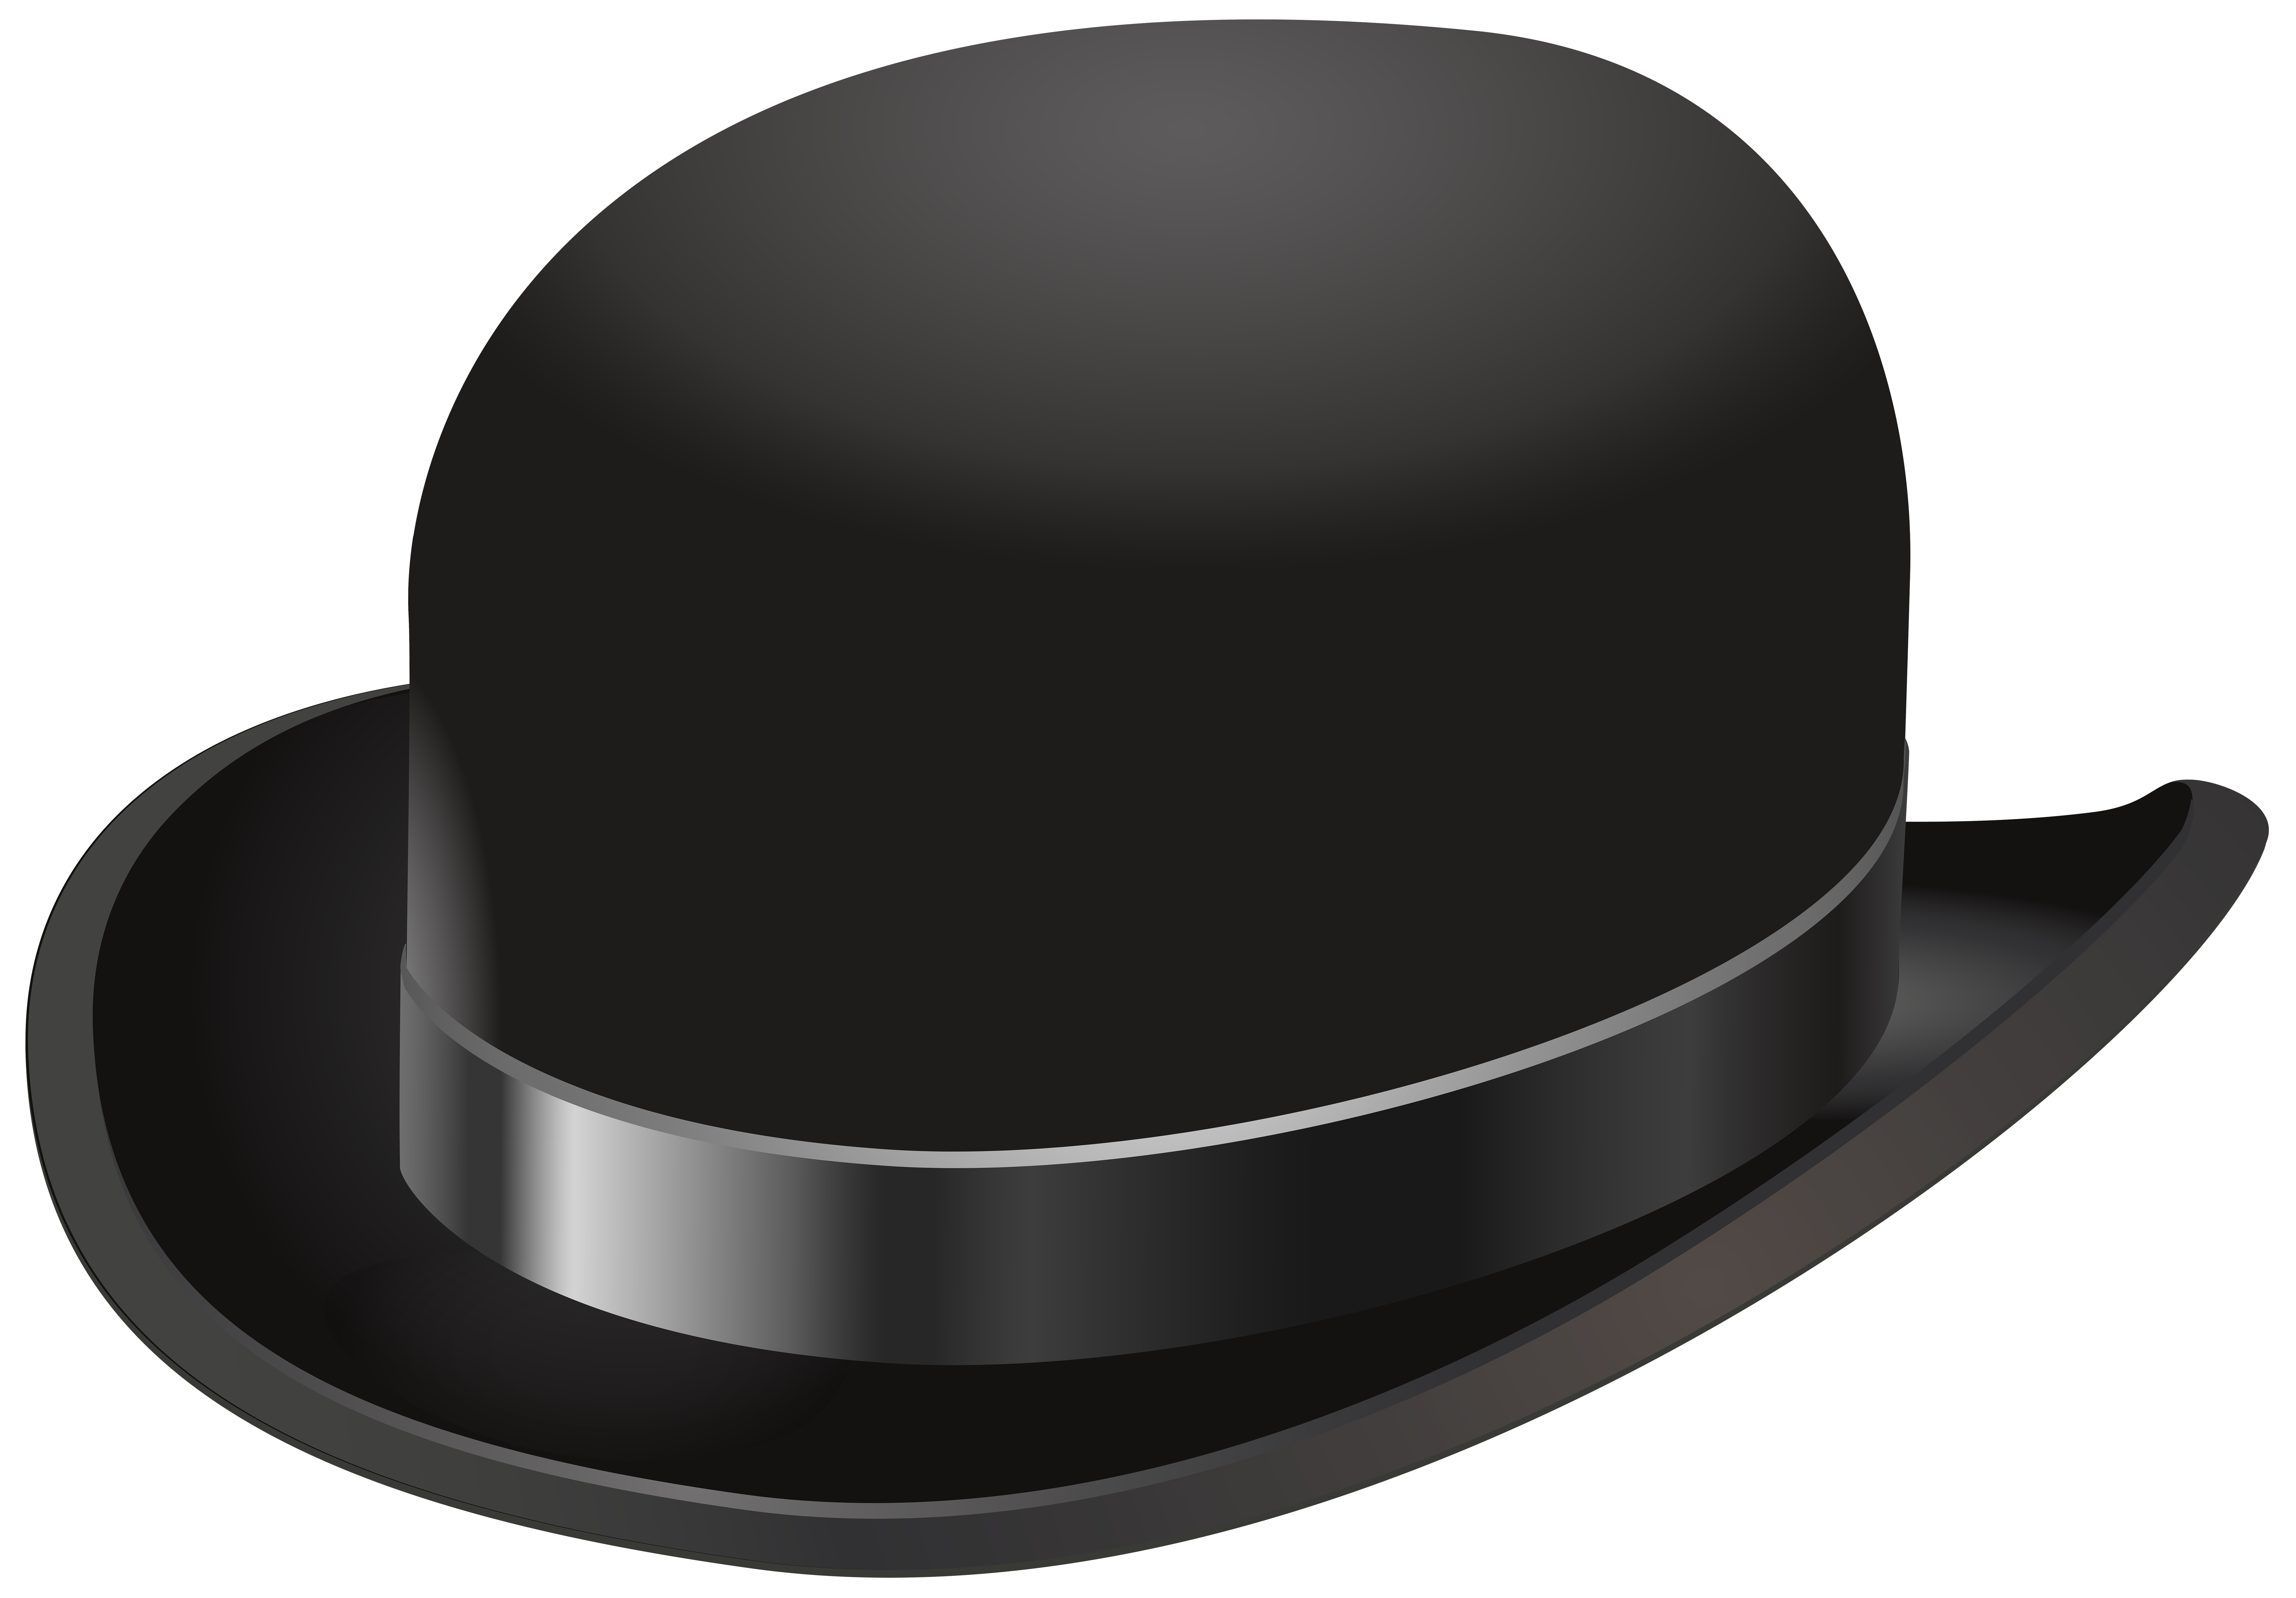 Bowler hat Cowboy hat Clip art - Vintage Hat Transparent PNG Clip Art ...